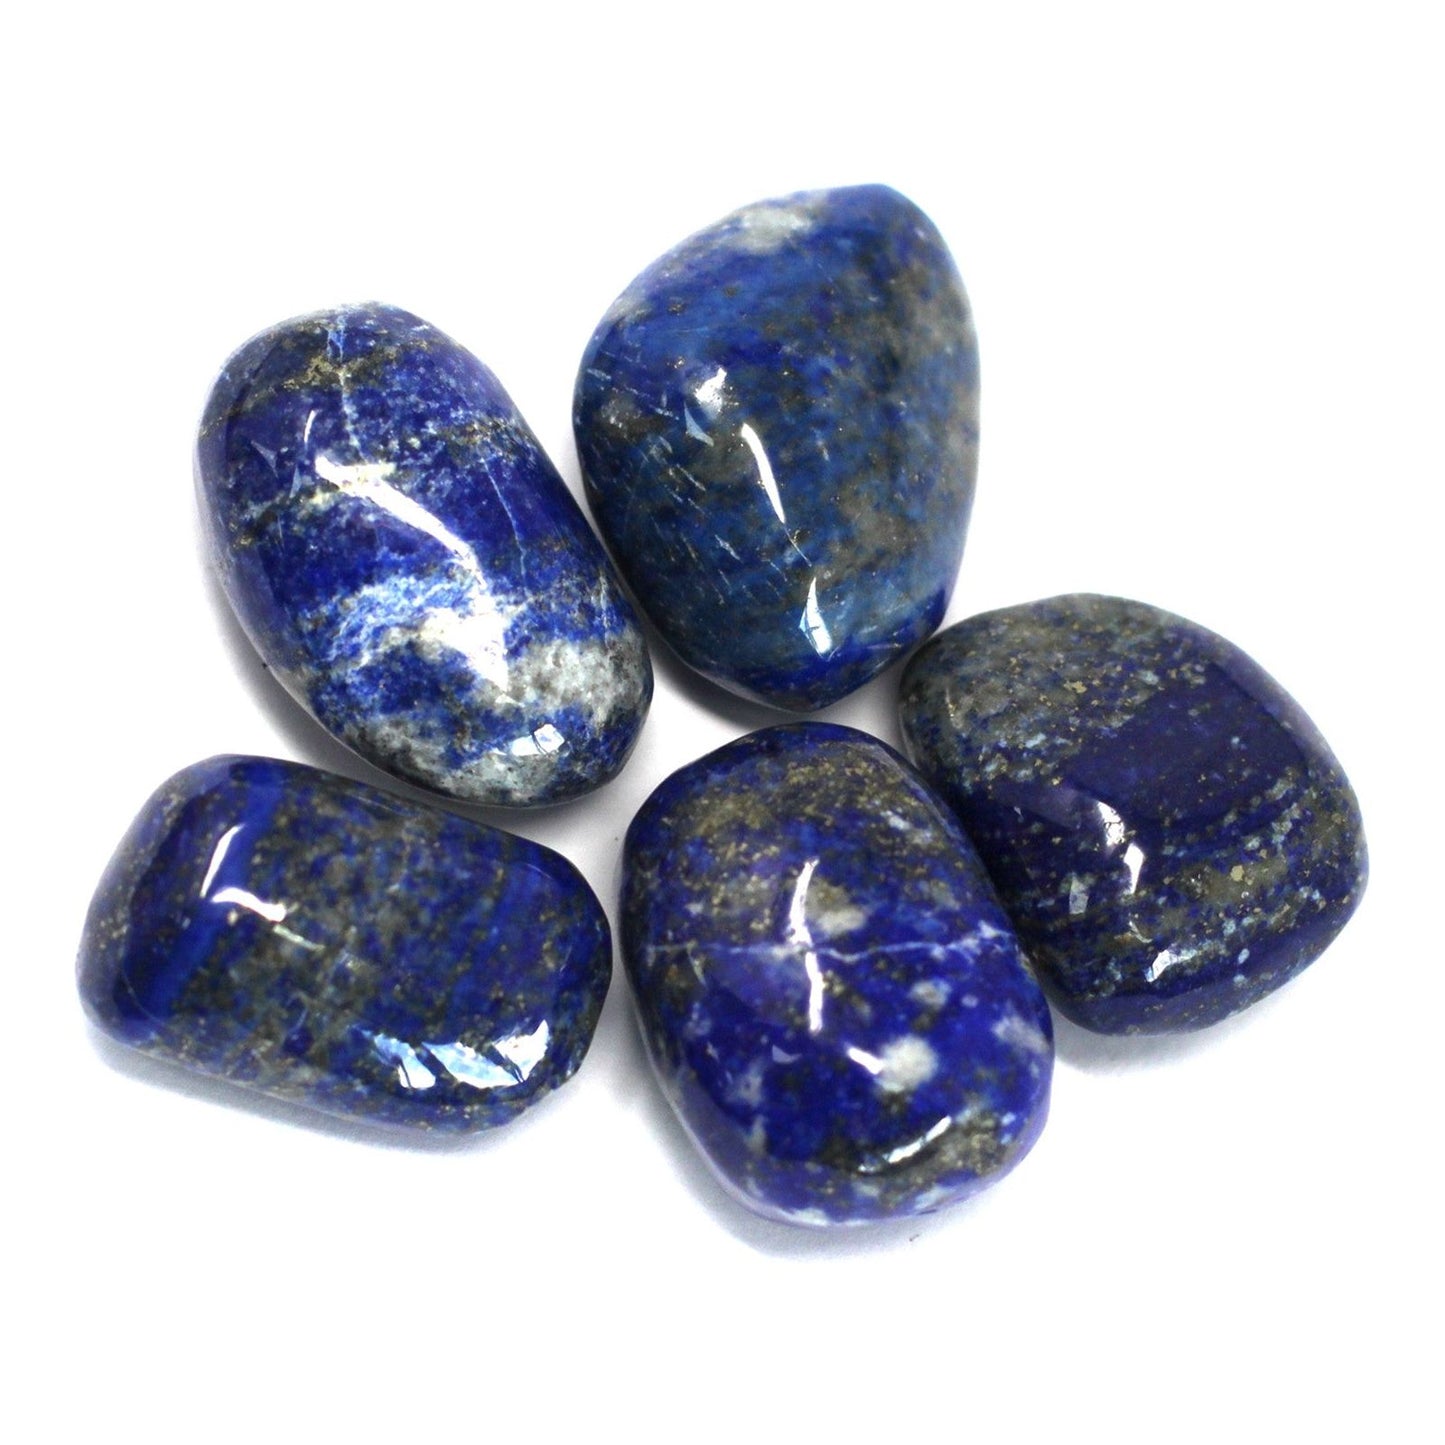 4 x Premium Tumble Stone - Lapis - Ashton and Finch